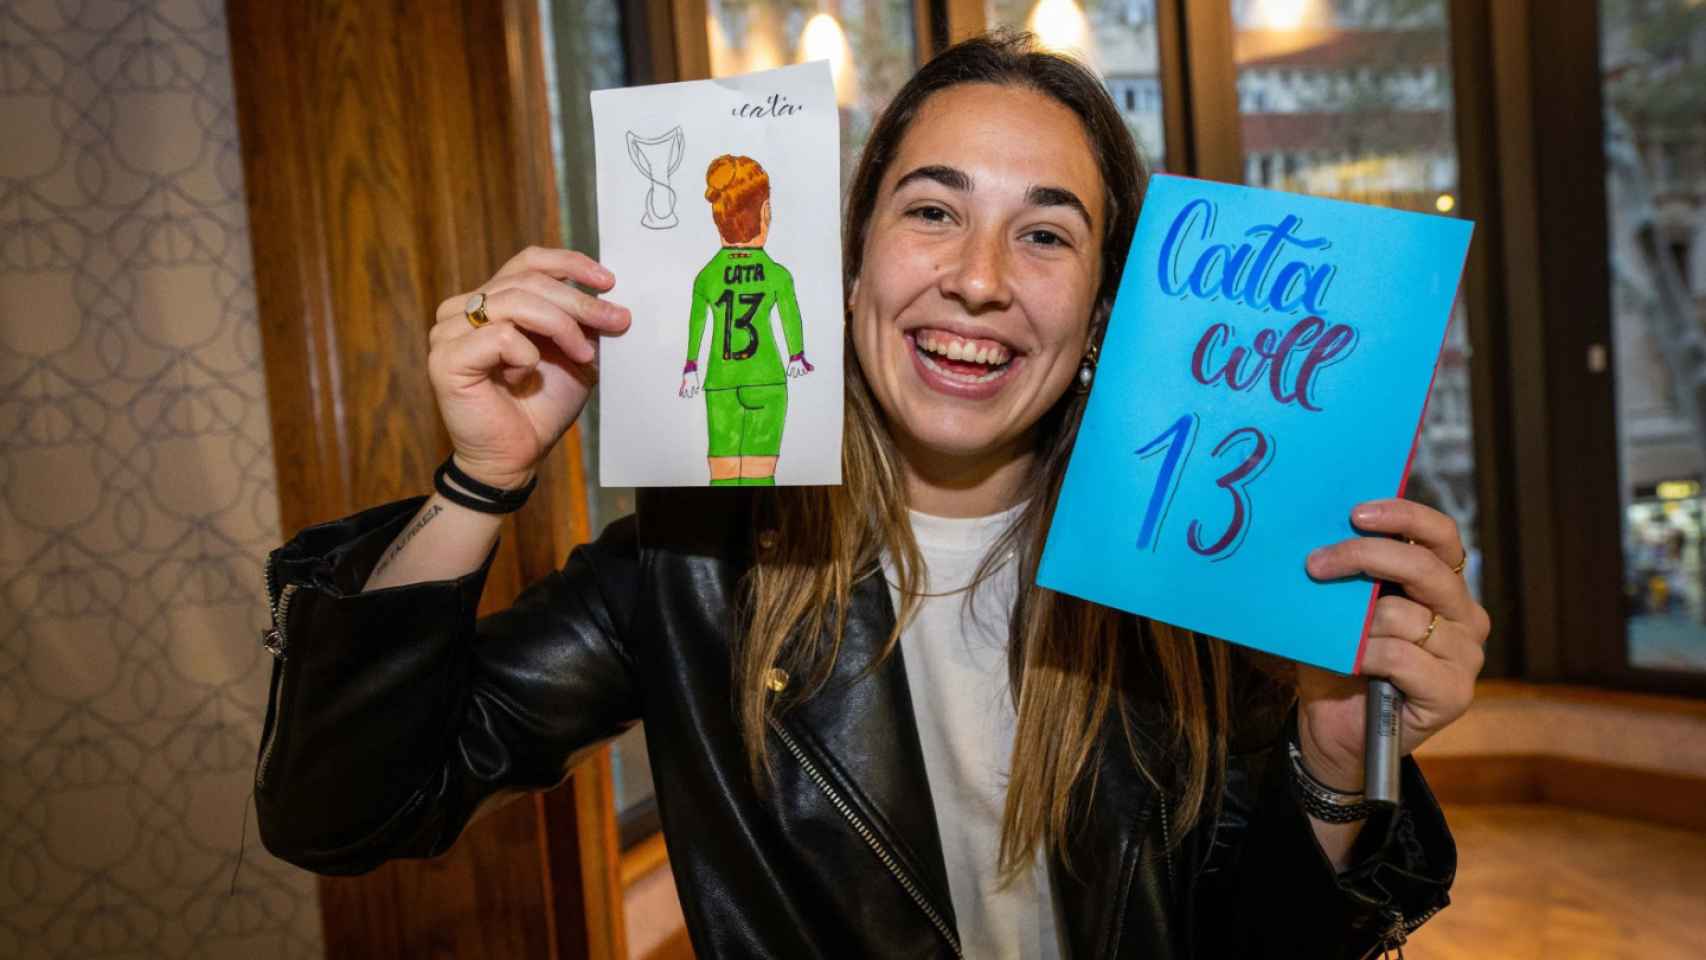 Cata Coll, sonriente con los dibujos que le han regalado los fans en la Barça Store de Canaletas